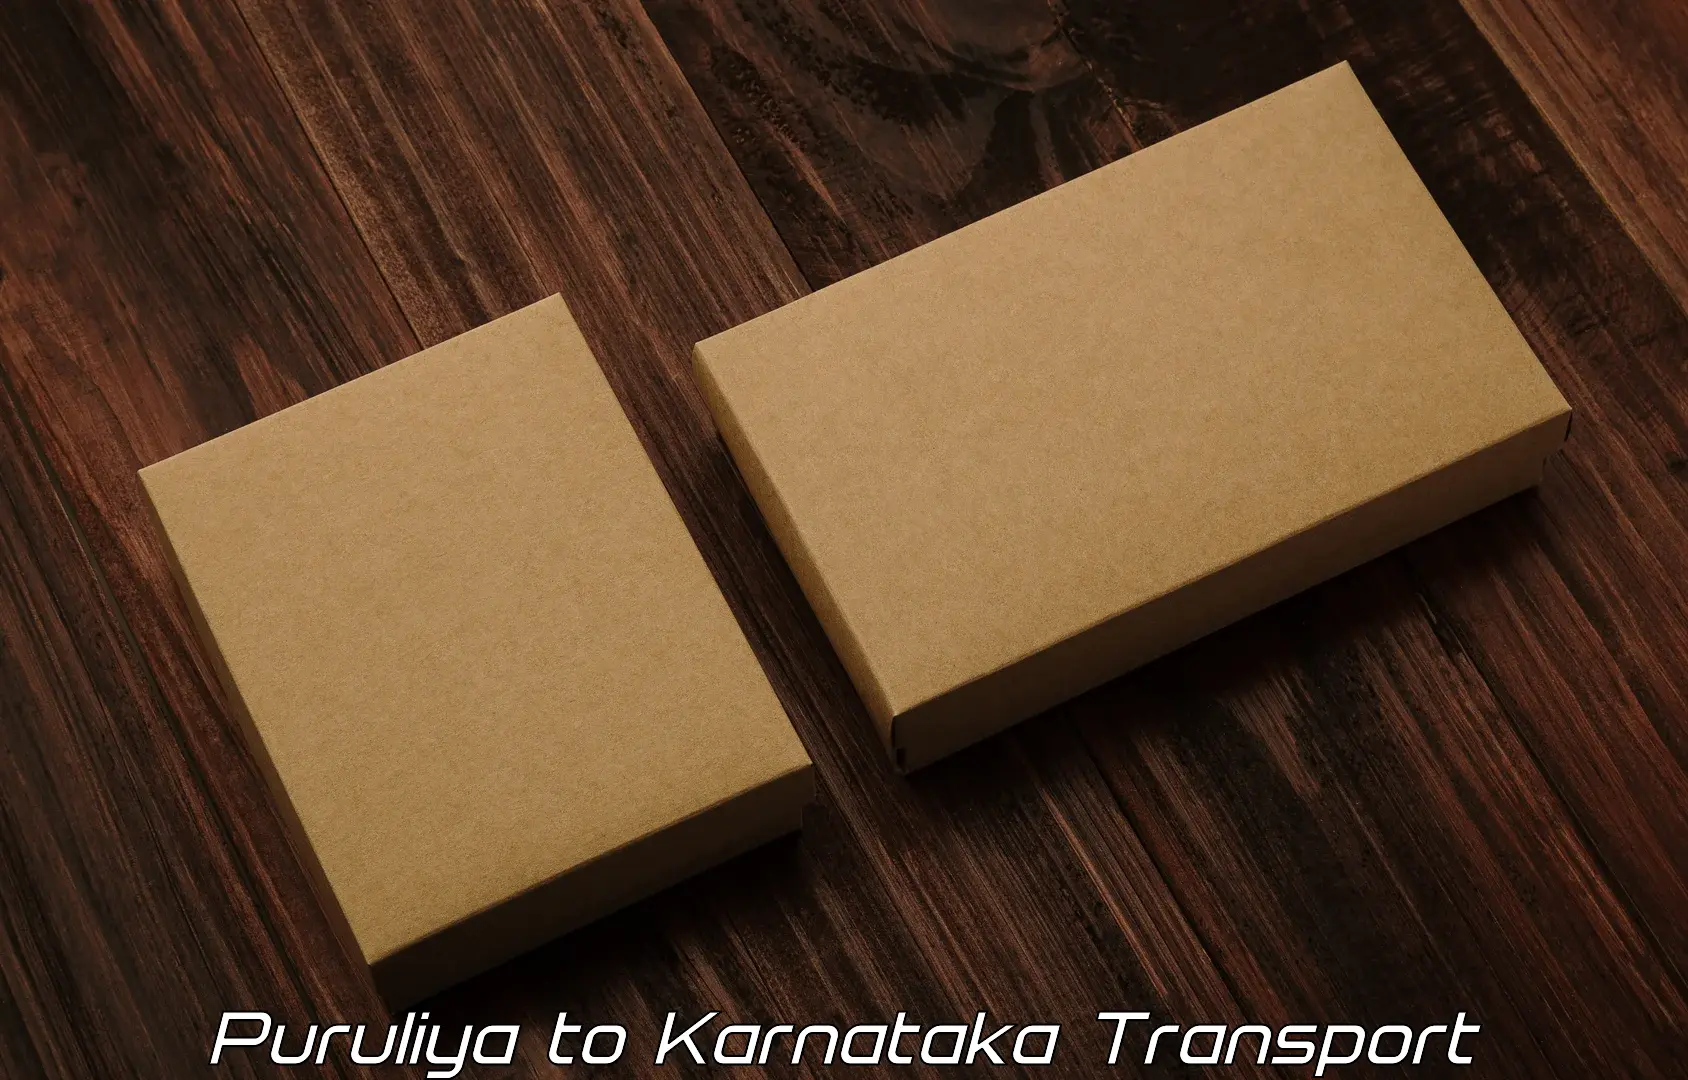 Truck transport companies in India Puruliya to Kalaburagi